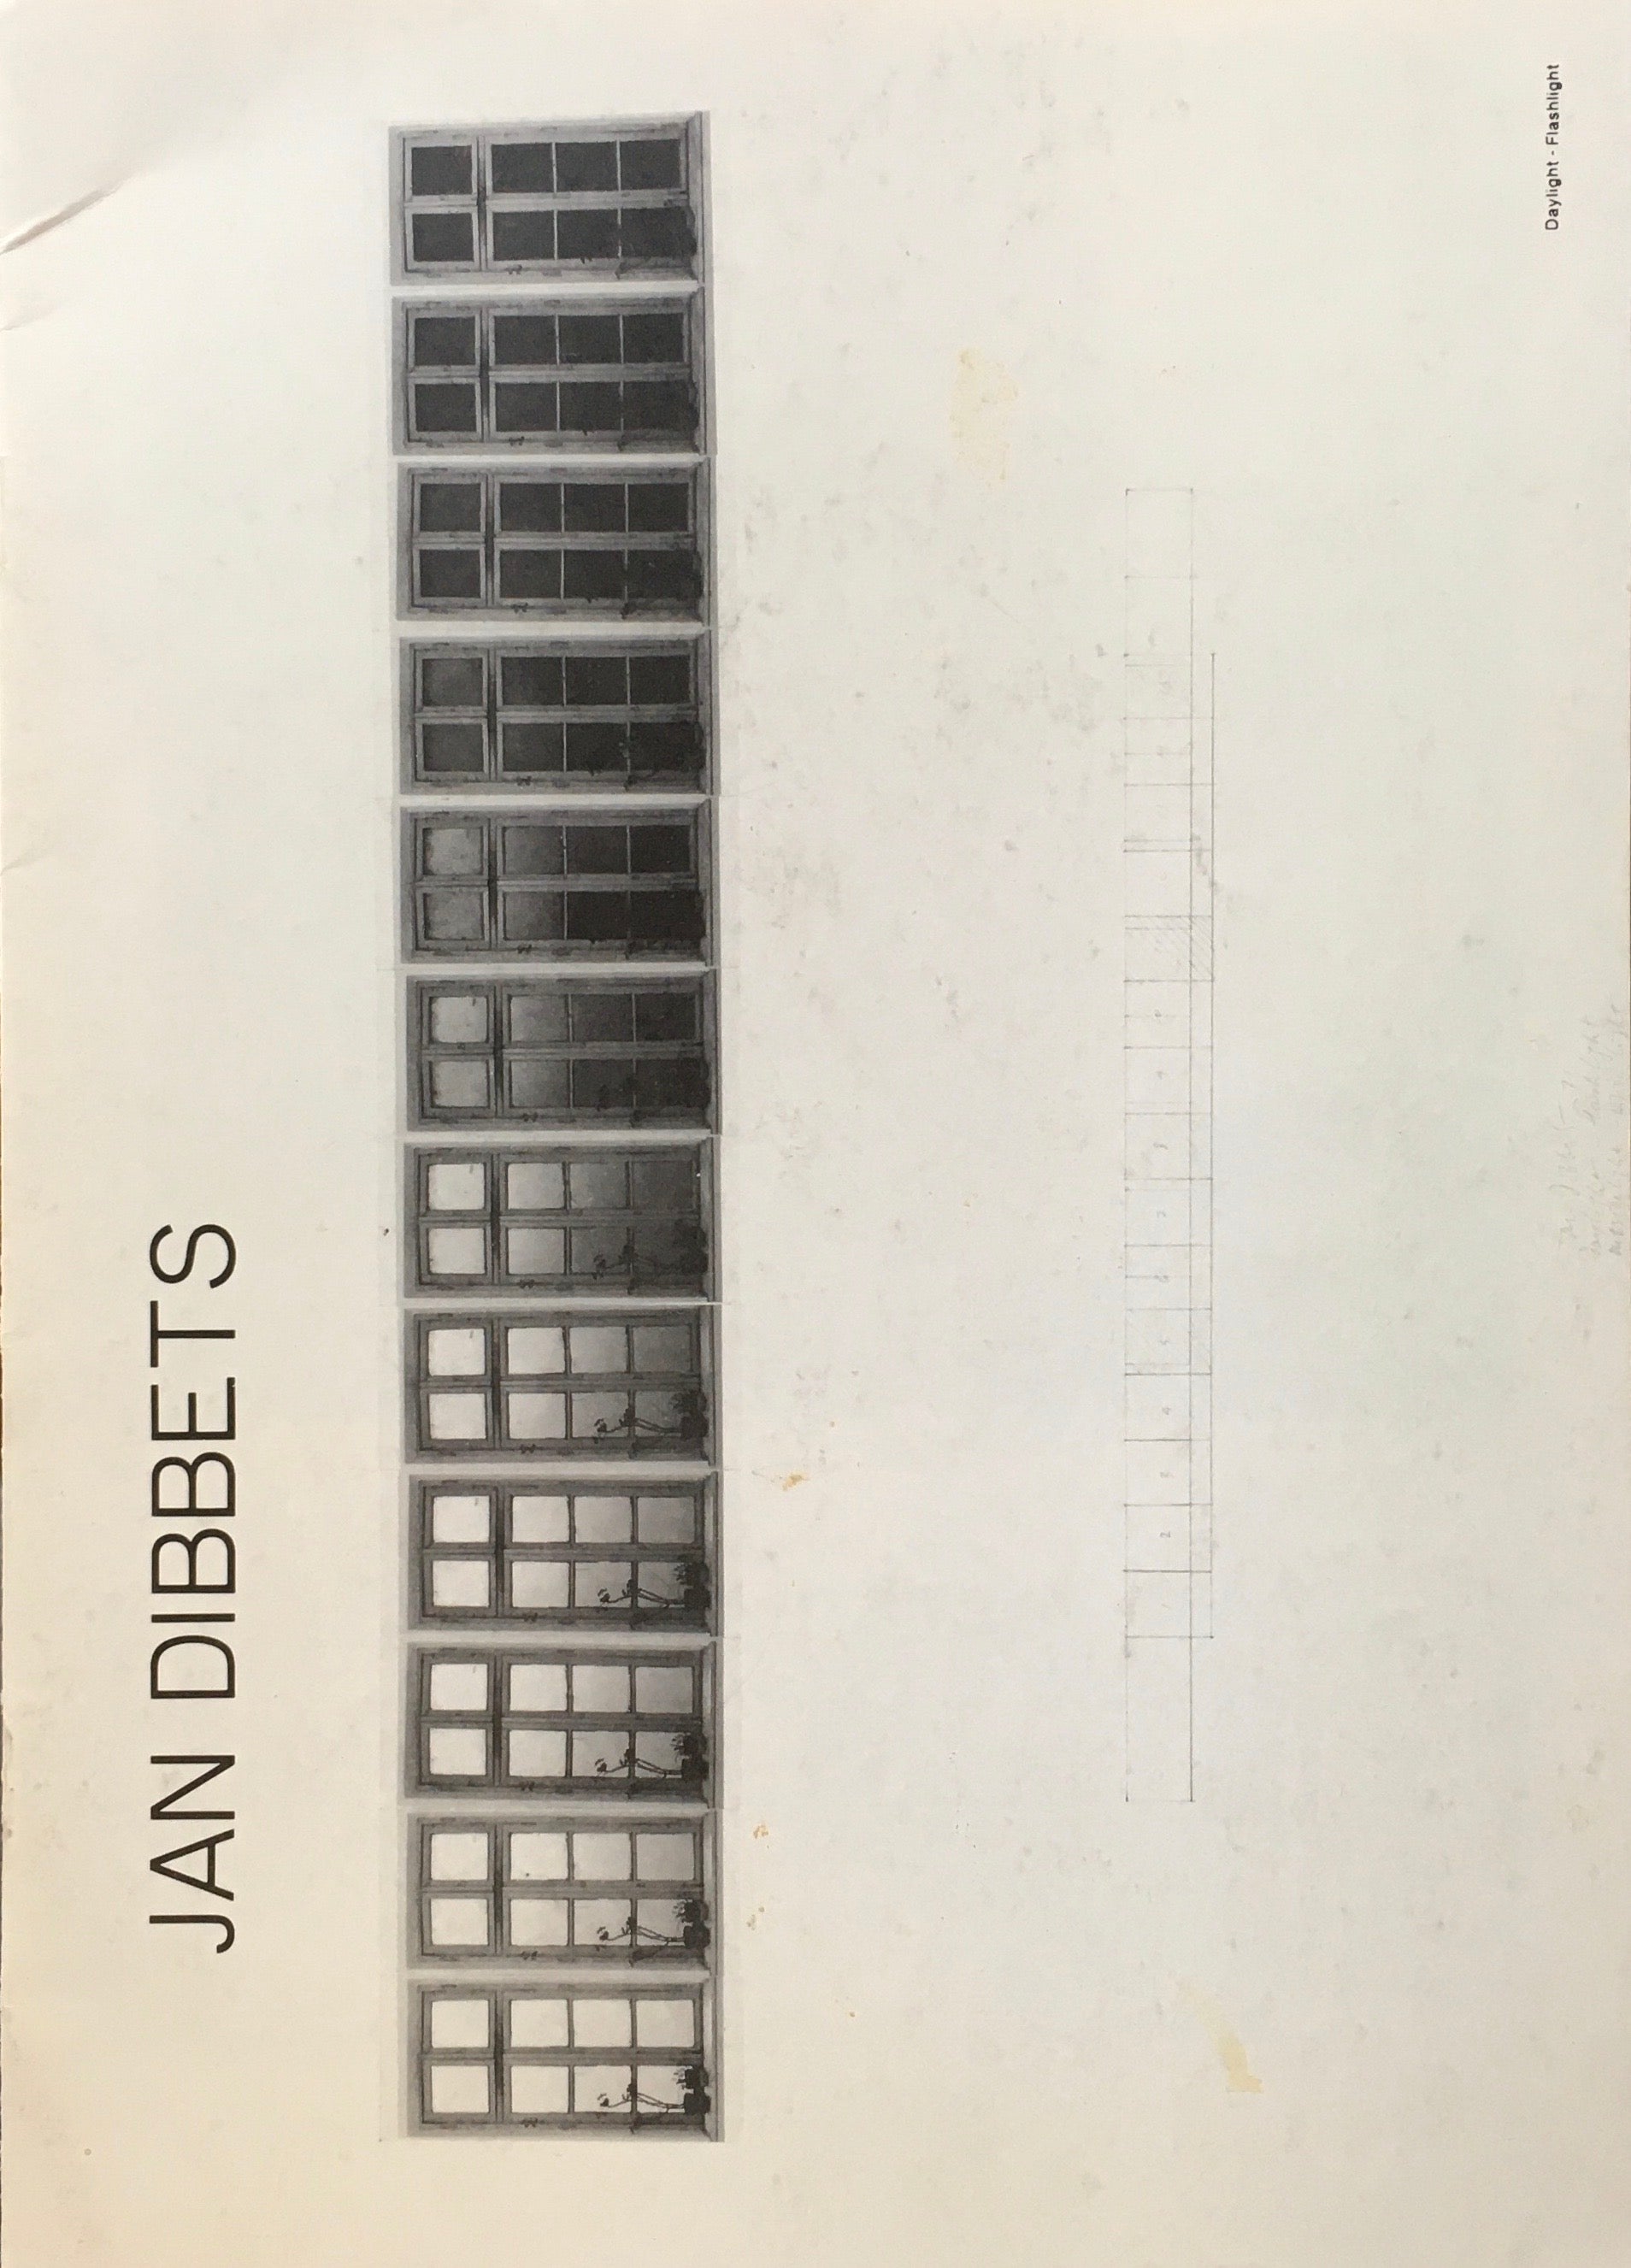 ヤン・ディベッツ展 1982 鎌倉画廊 JAN DIBBETS – smokebooks shop